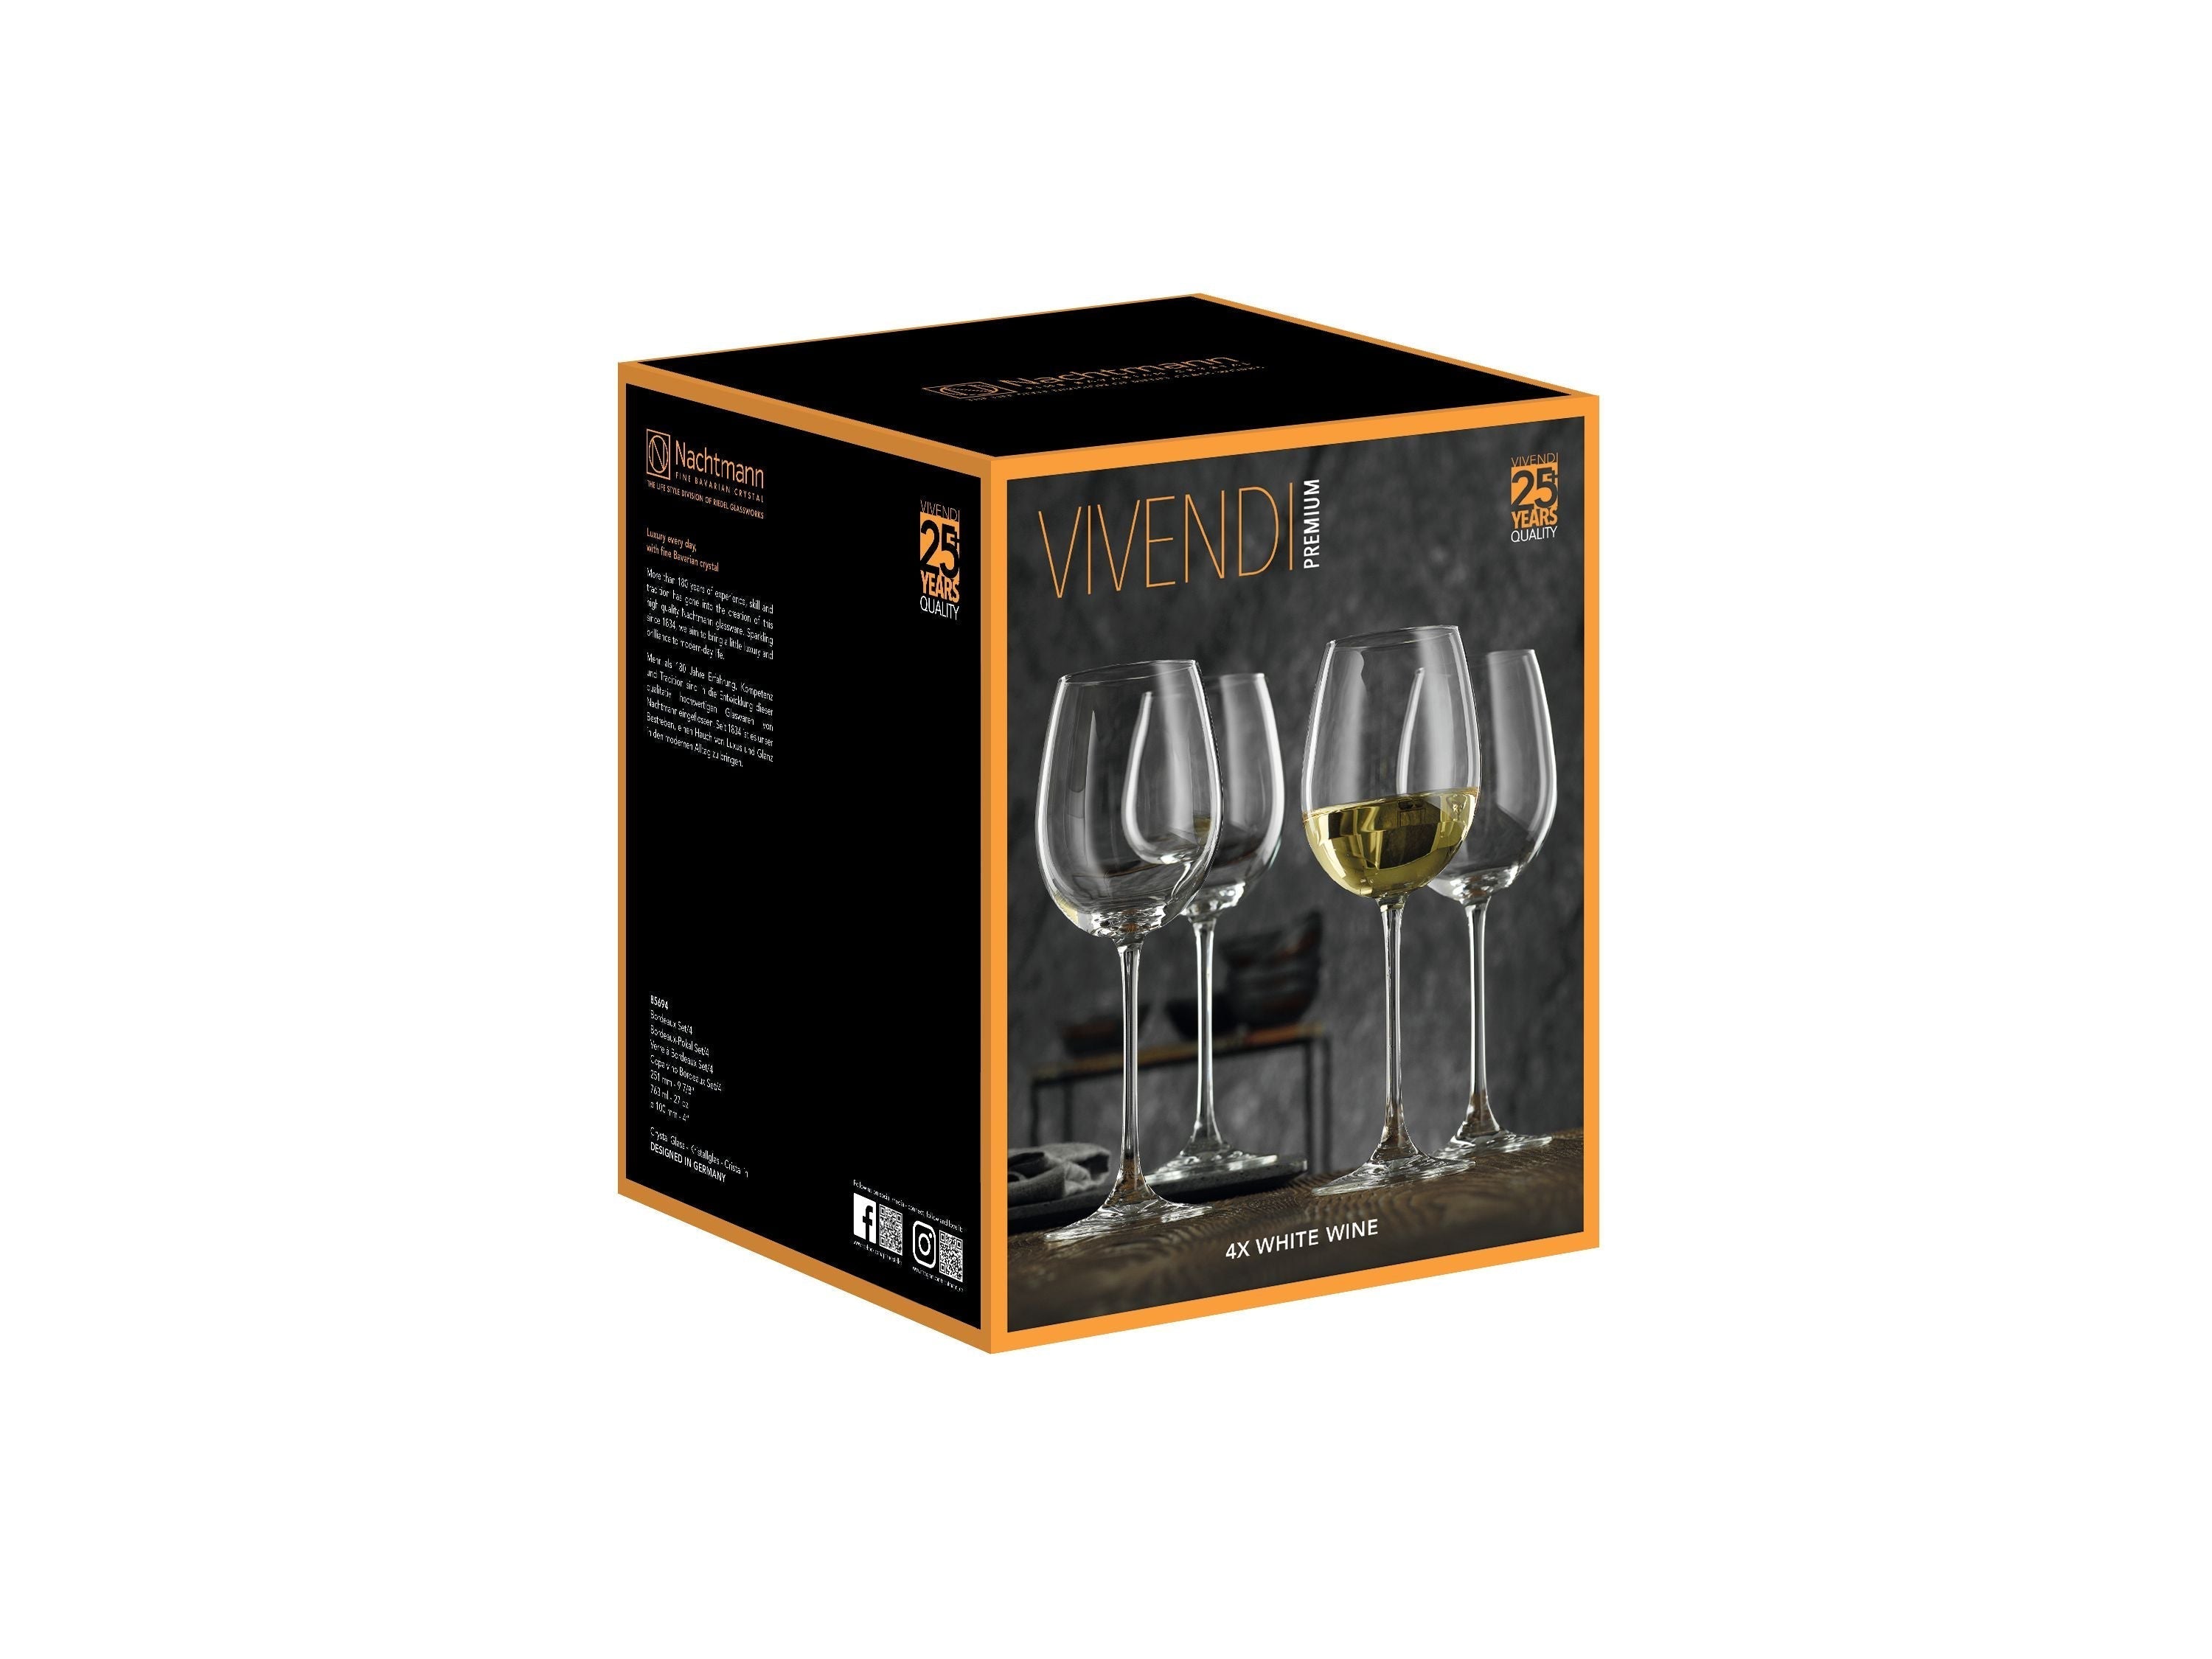 Nachtmann Vivendi Premium-Weißweinglas 474 ml, 4er-Set